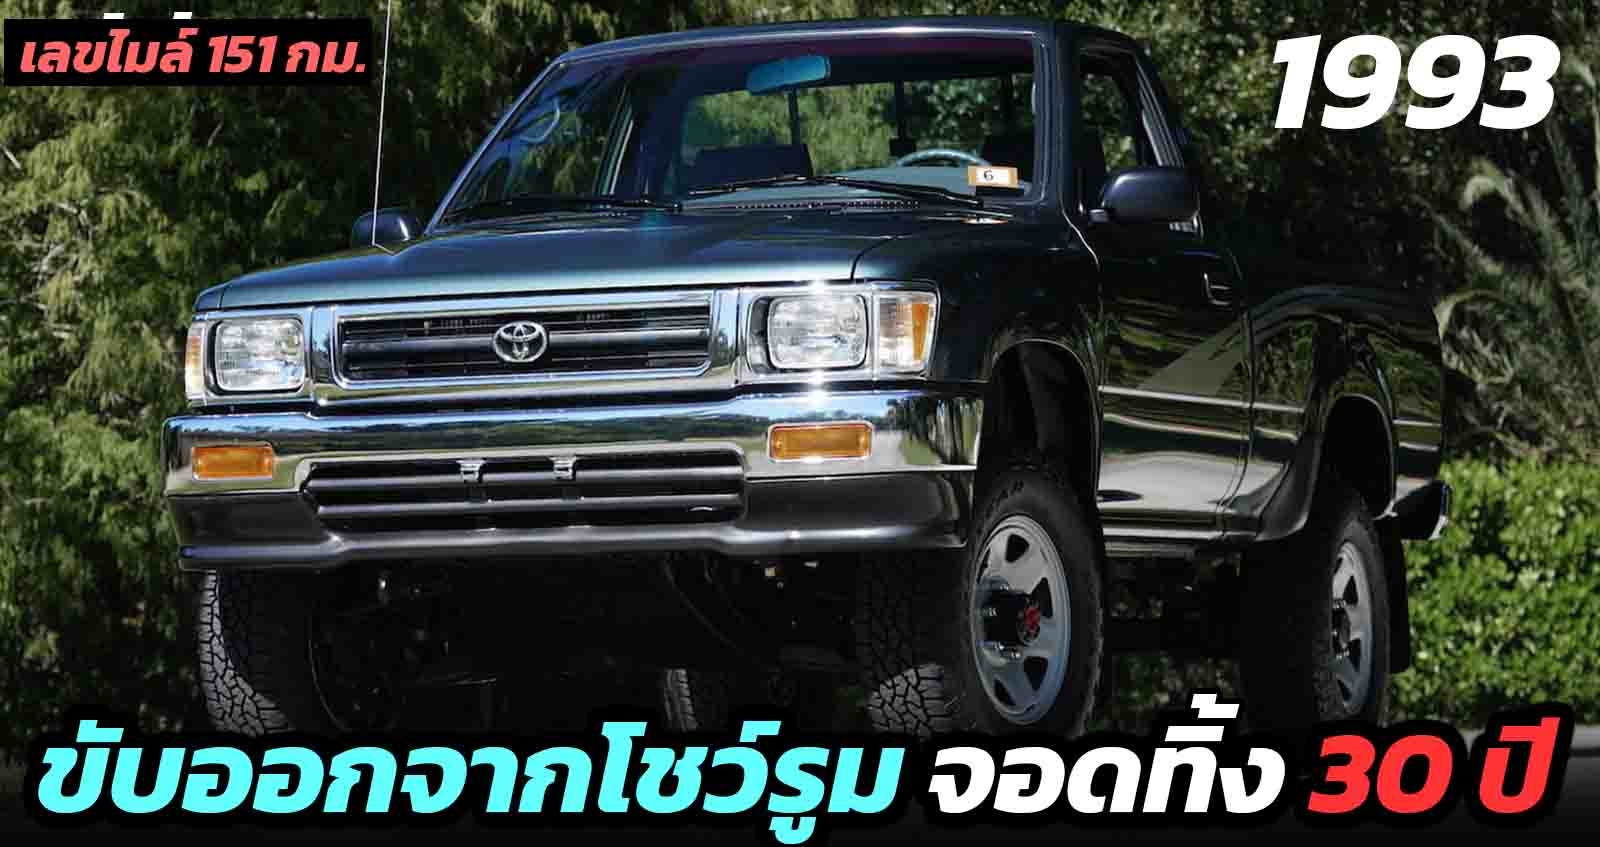 ขับออกจากโชว์รูม จอดทิ้งไว้ 30 ปี ด้วยเลขไมล์ 151 กม. Toyota Hilux 1993 เตรียมออกประมูล